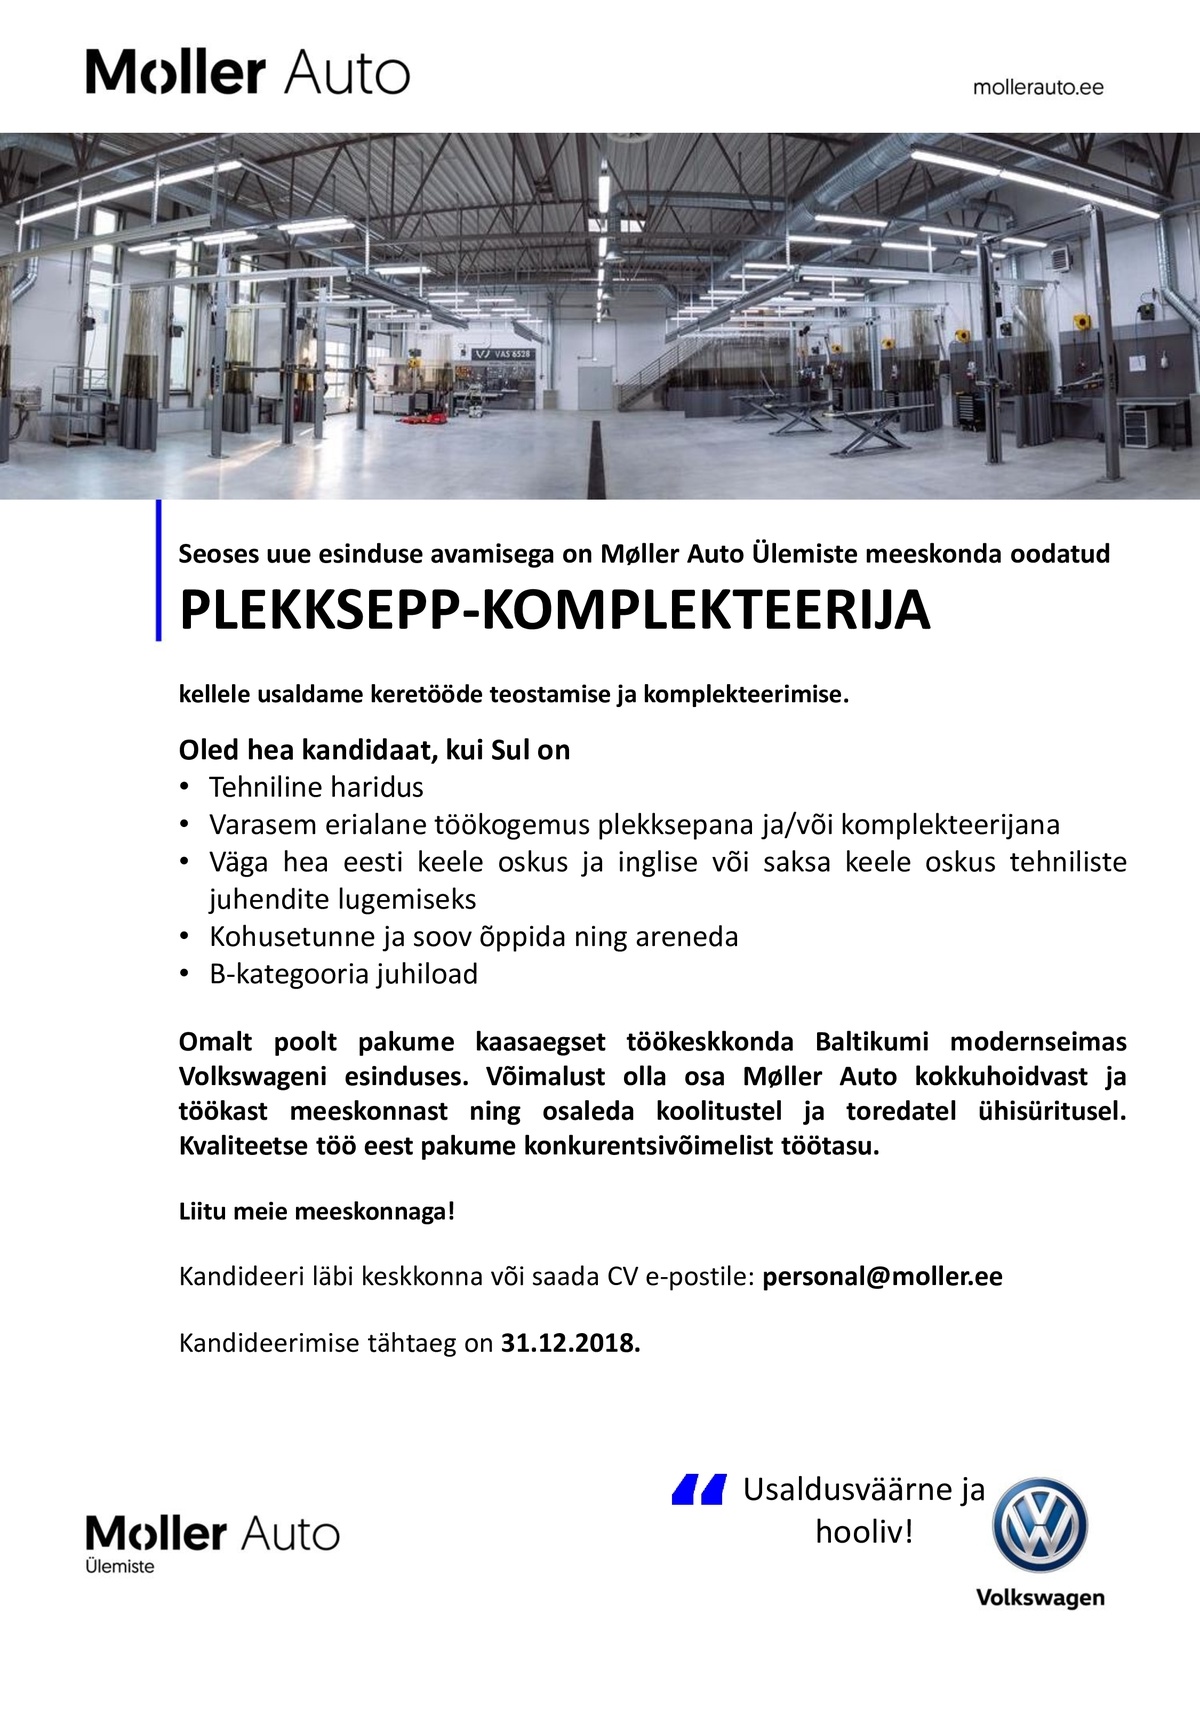 Møller Auto PLEKKSEPP-KOMPLEKTEERIJA